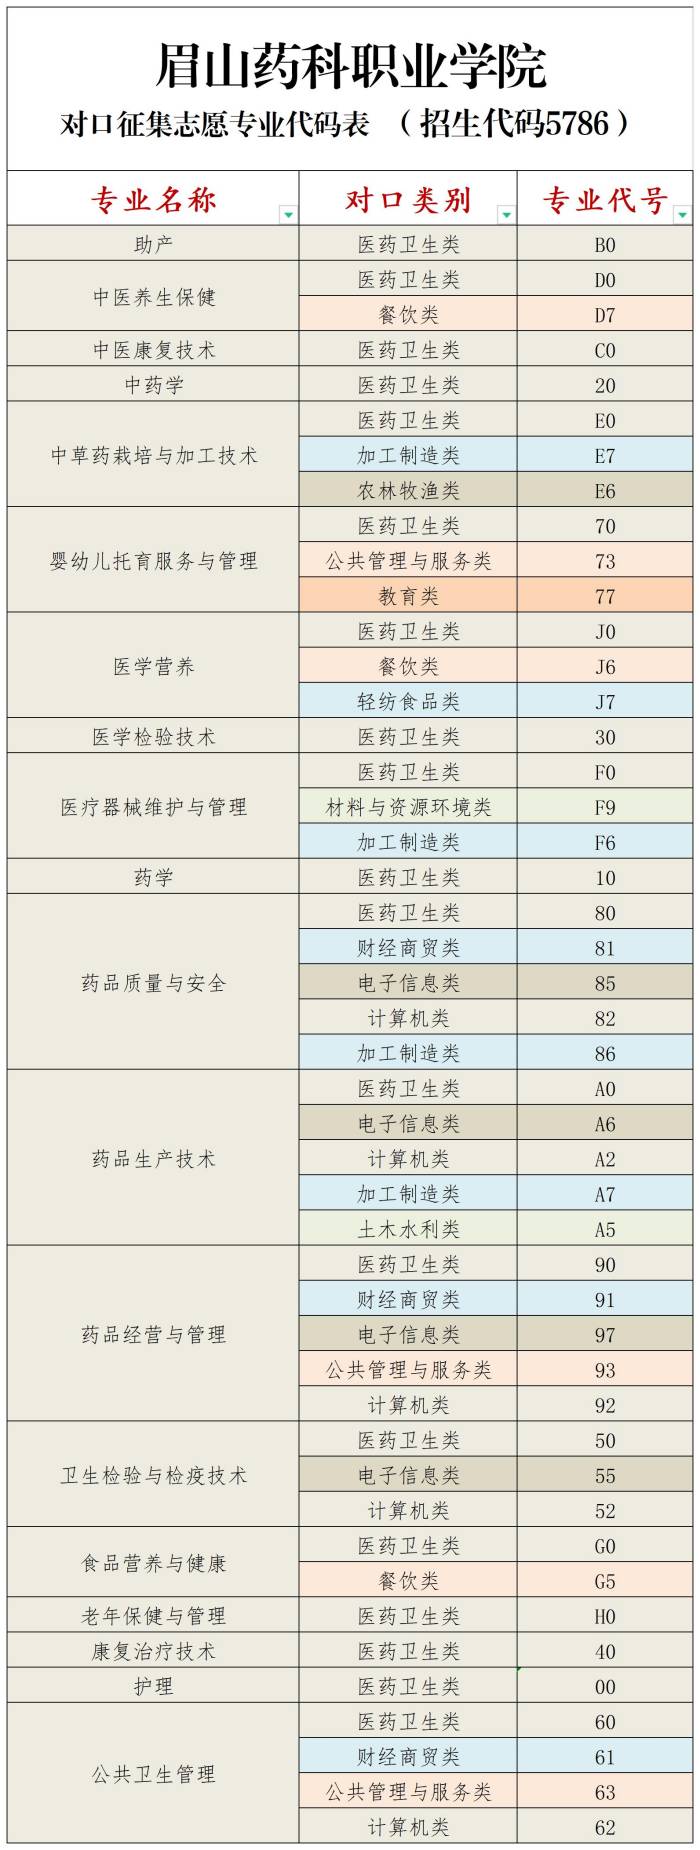 对口高职征集志愿专业代码表(1).jpg